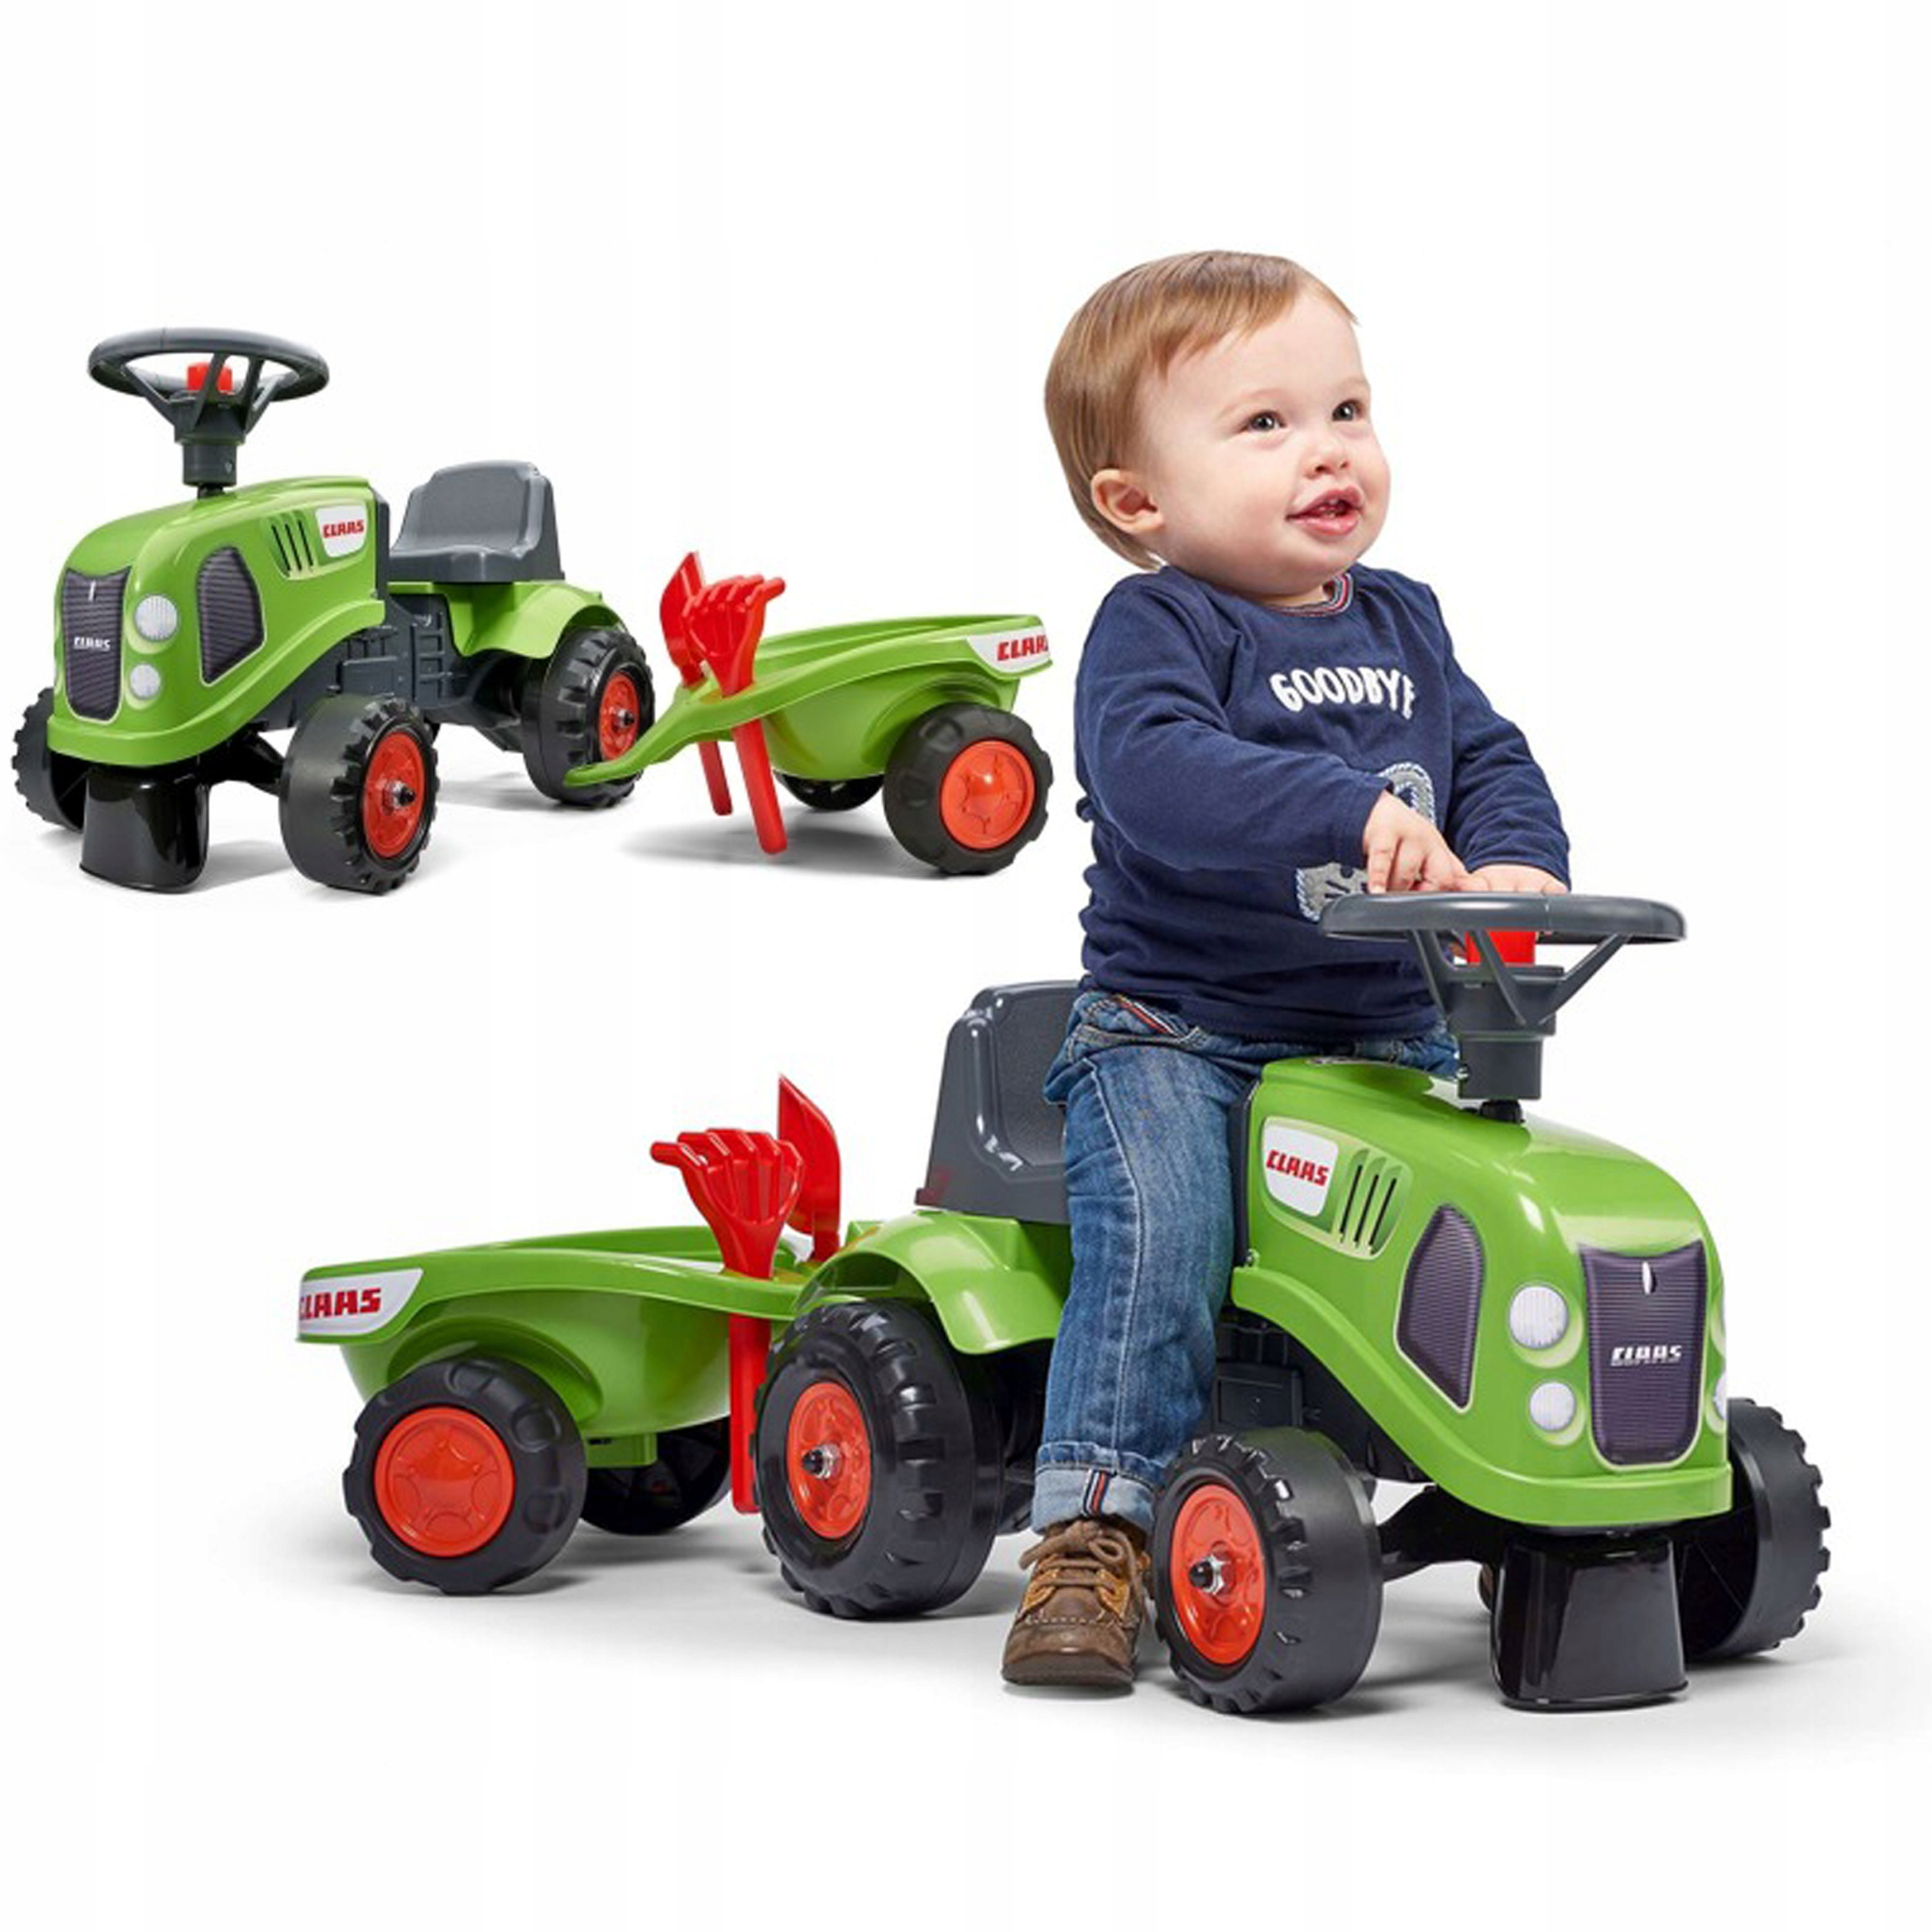 Tractor-corepasillos Claas con remolque y accesorios